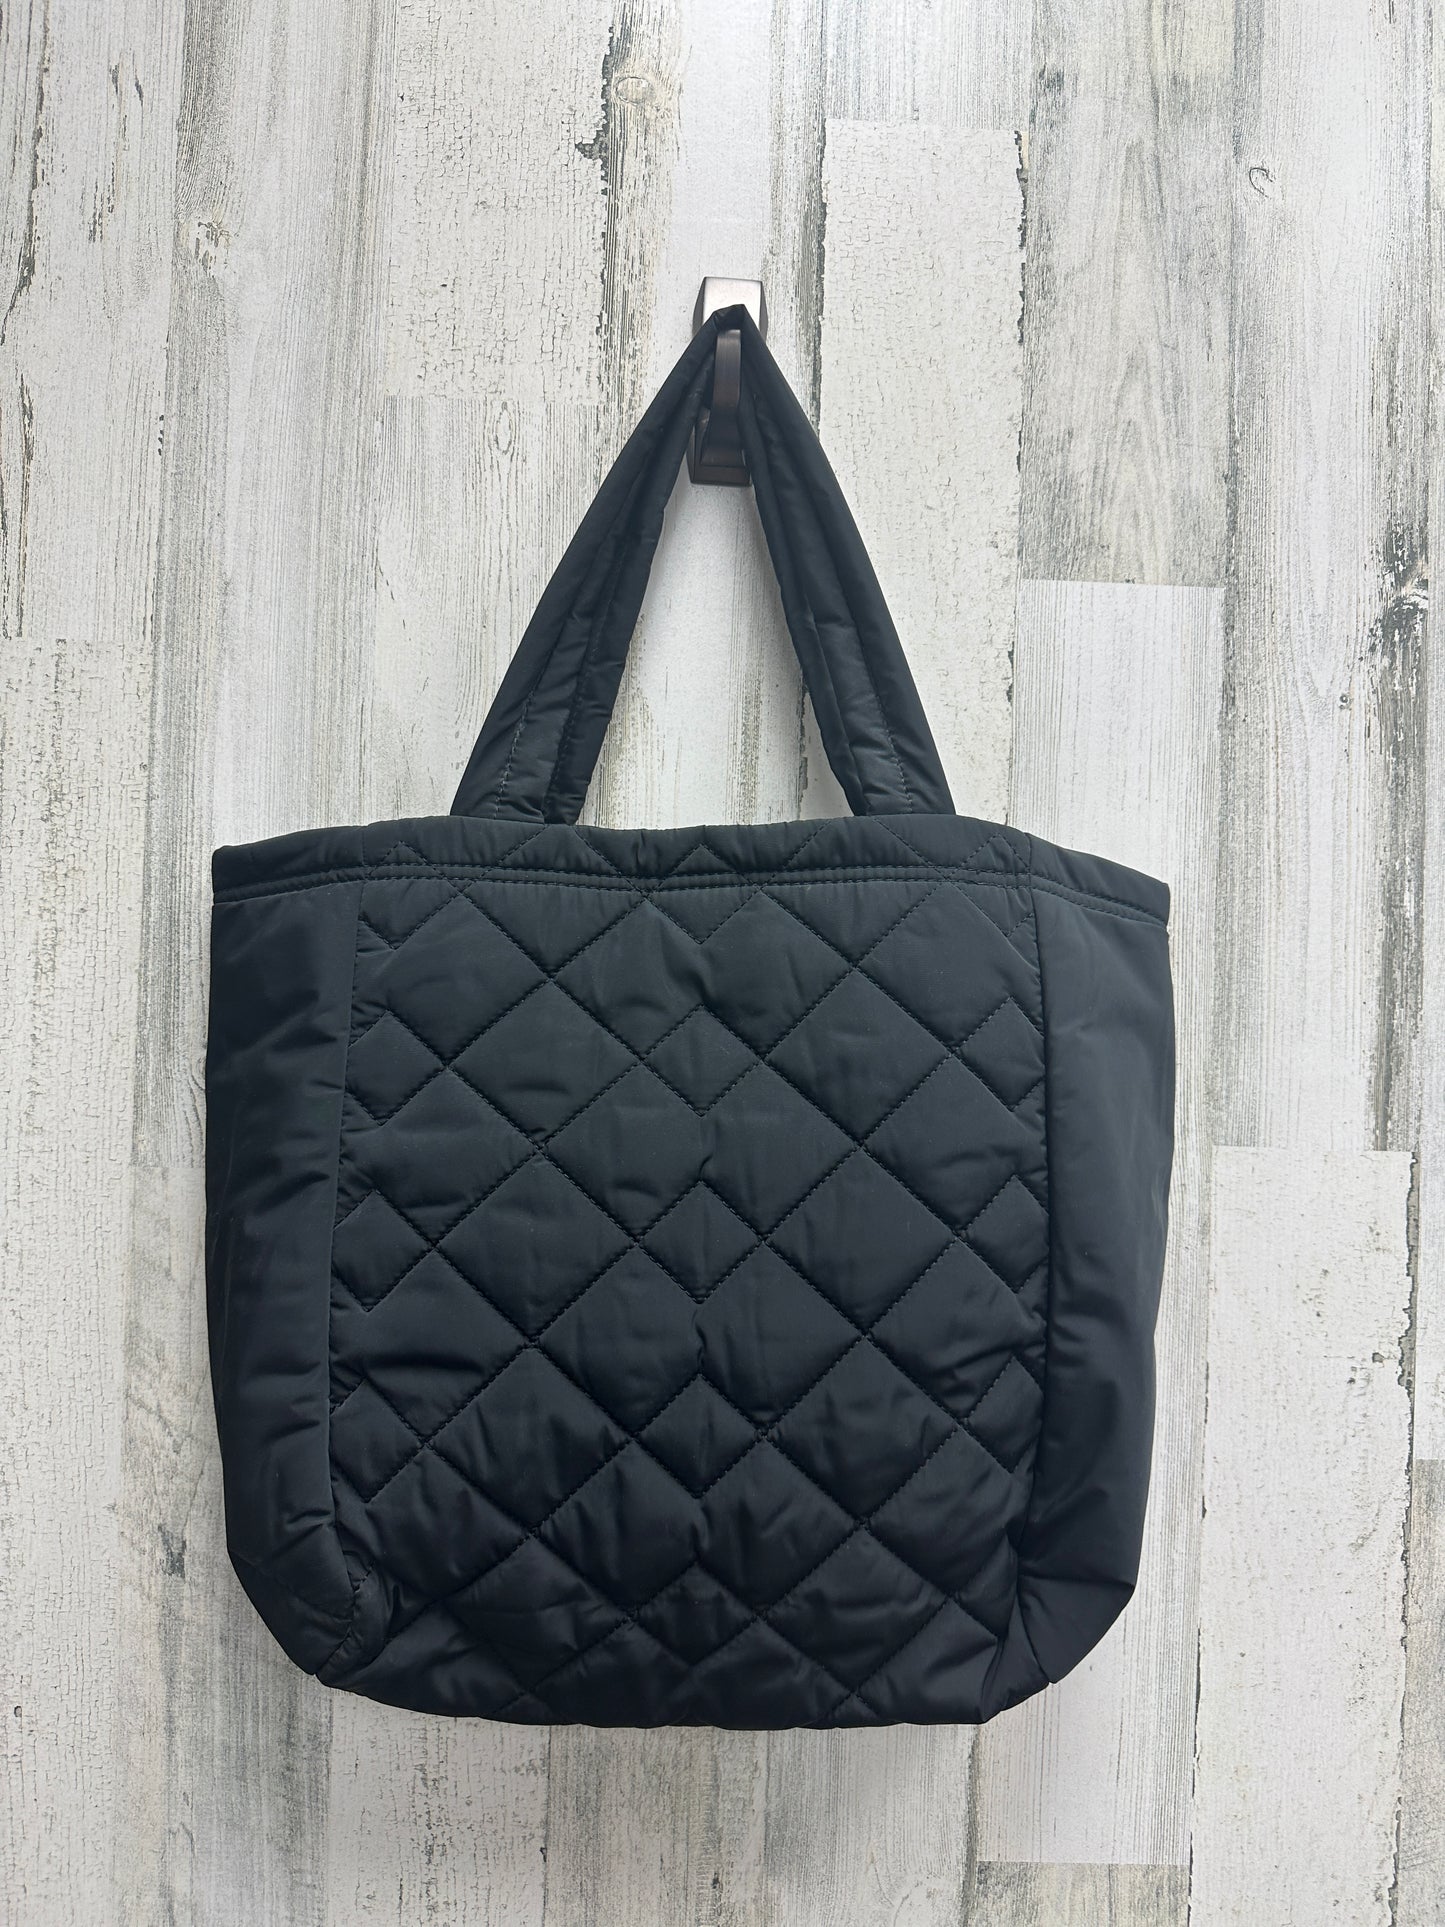 Handbag Designer By Marc Jacobs  Size: Large